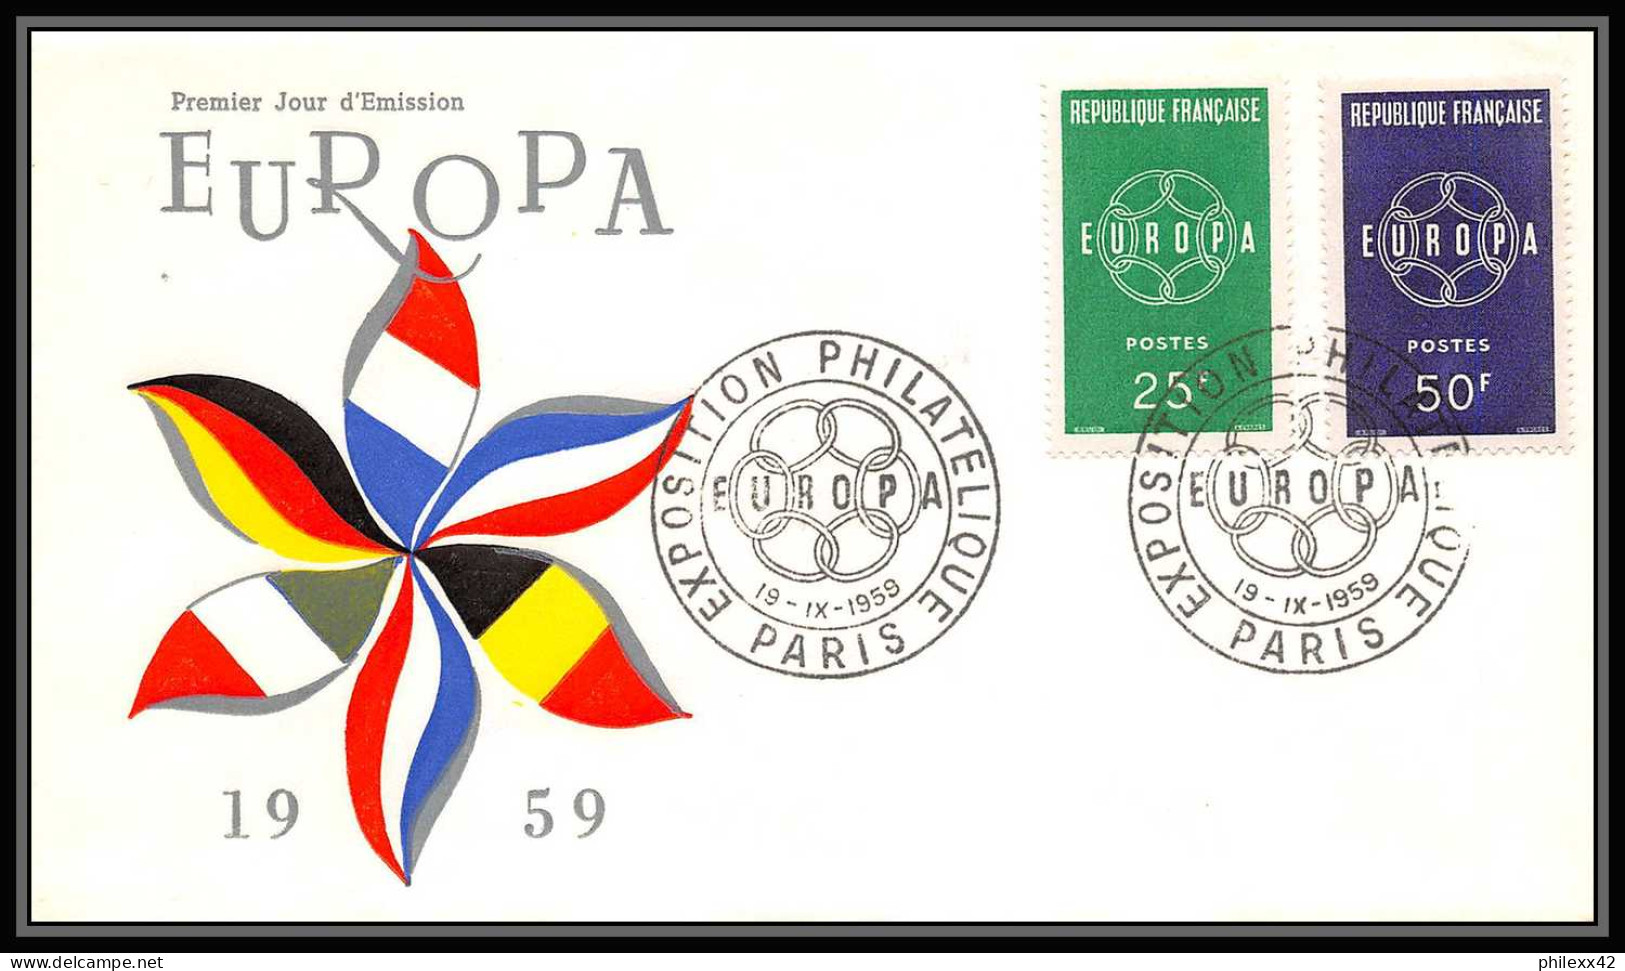 004 FRANCE Lettre (cover briefe) fdc (premier jour) Europe Europa 1956 - 1970 lot de 32 enveloppes différentes 